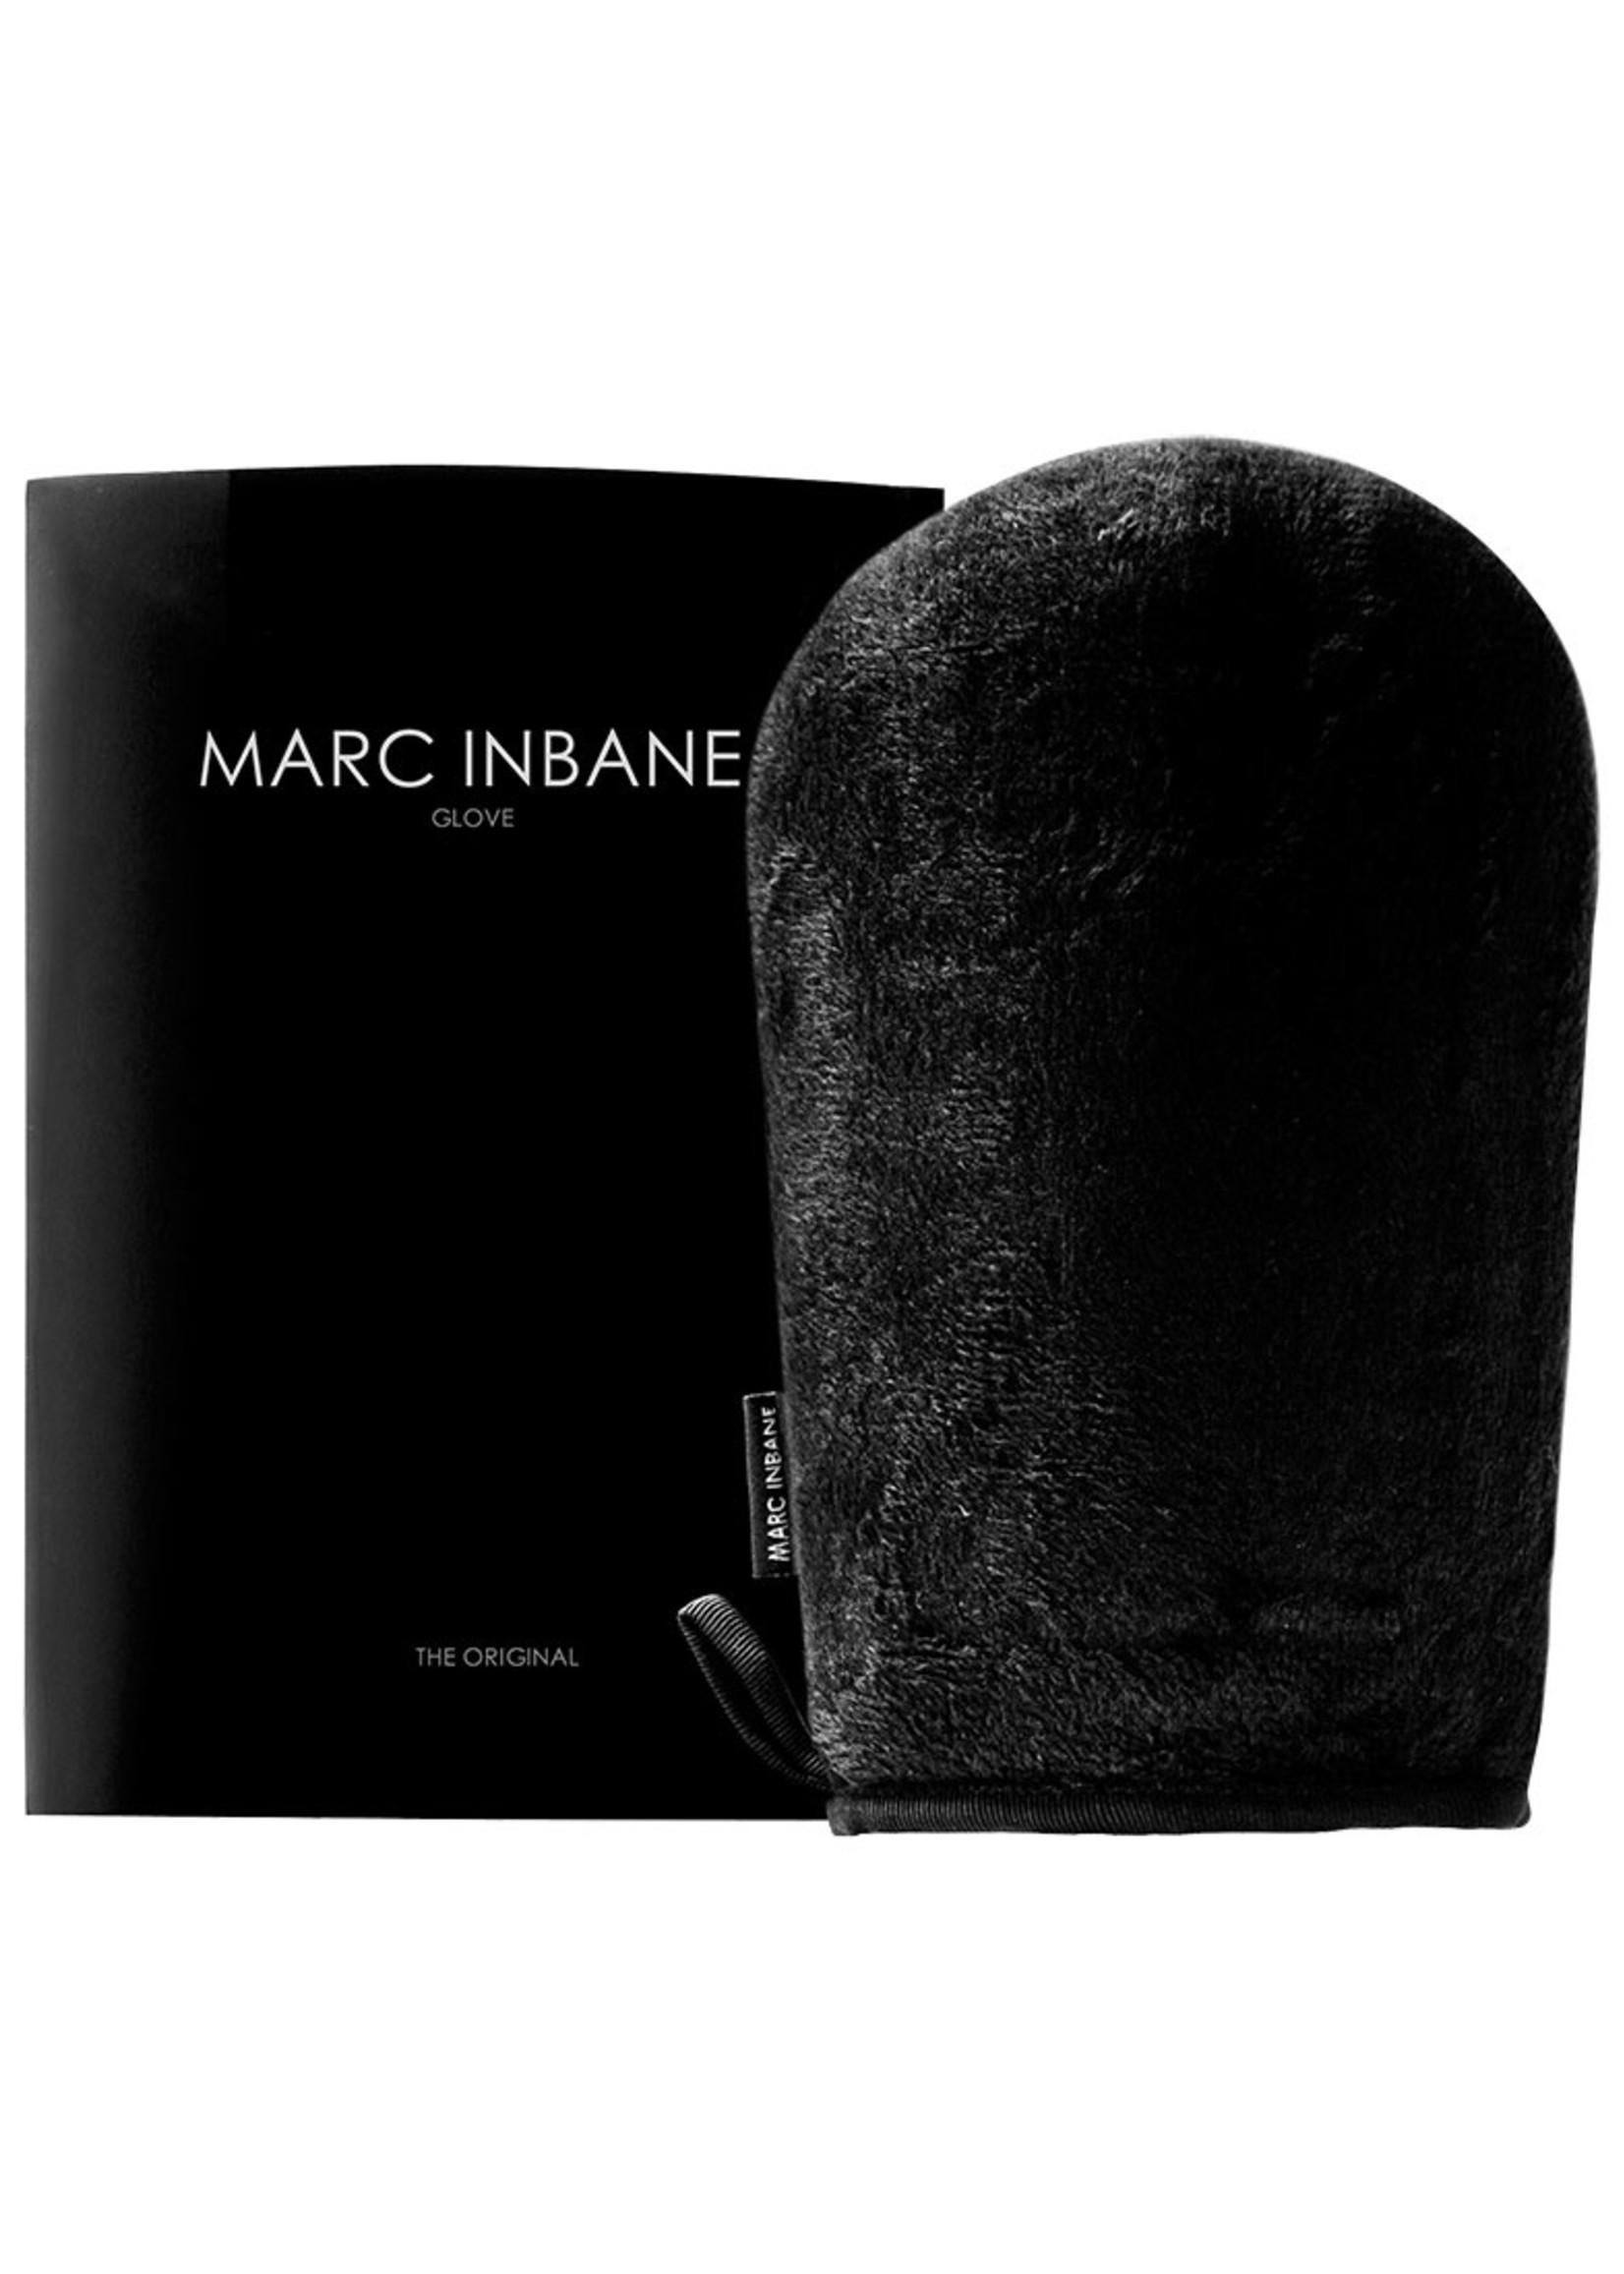 Marc Inbane Marc Inbane Glove